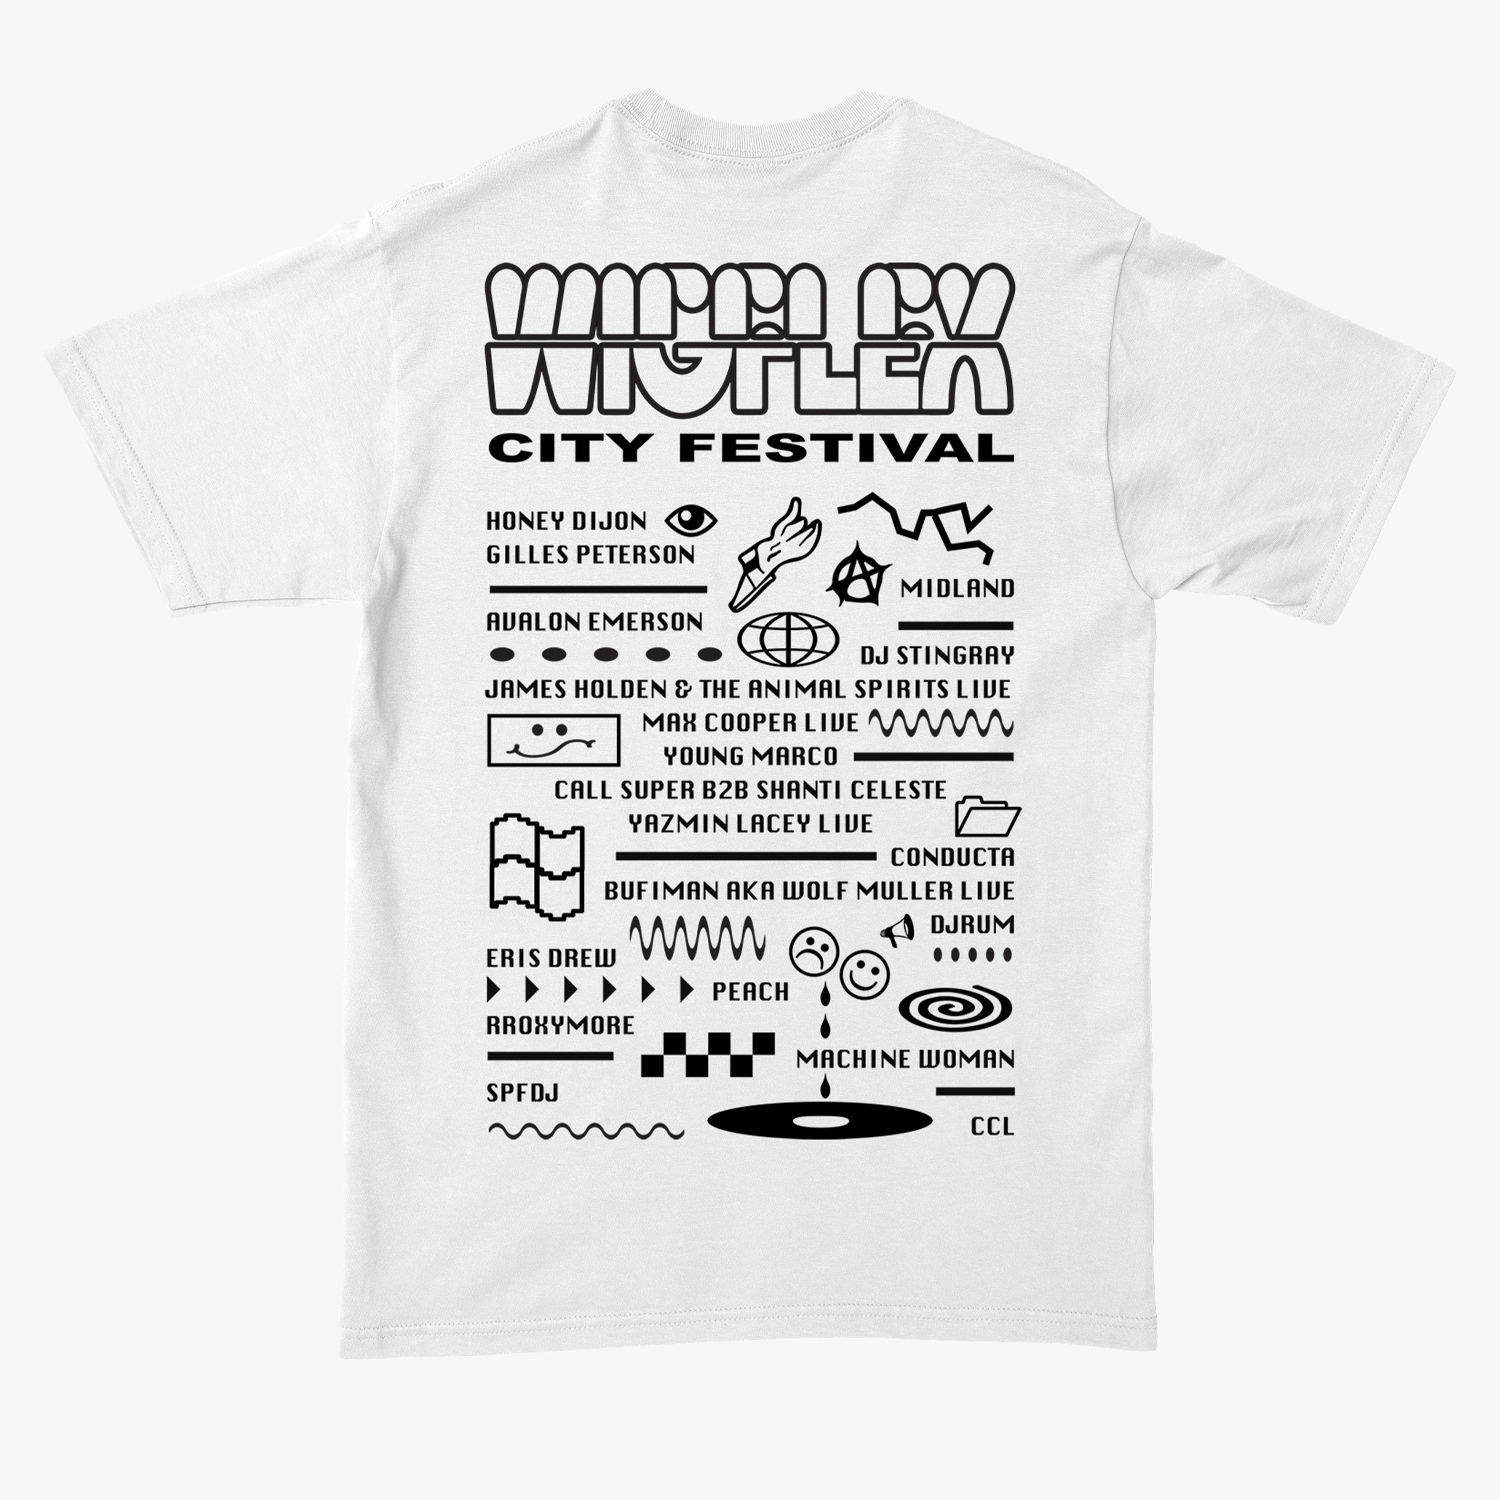 Wigflex's 'Wigflex City Festival' T-shirt